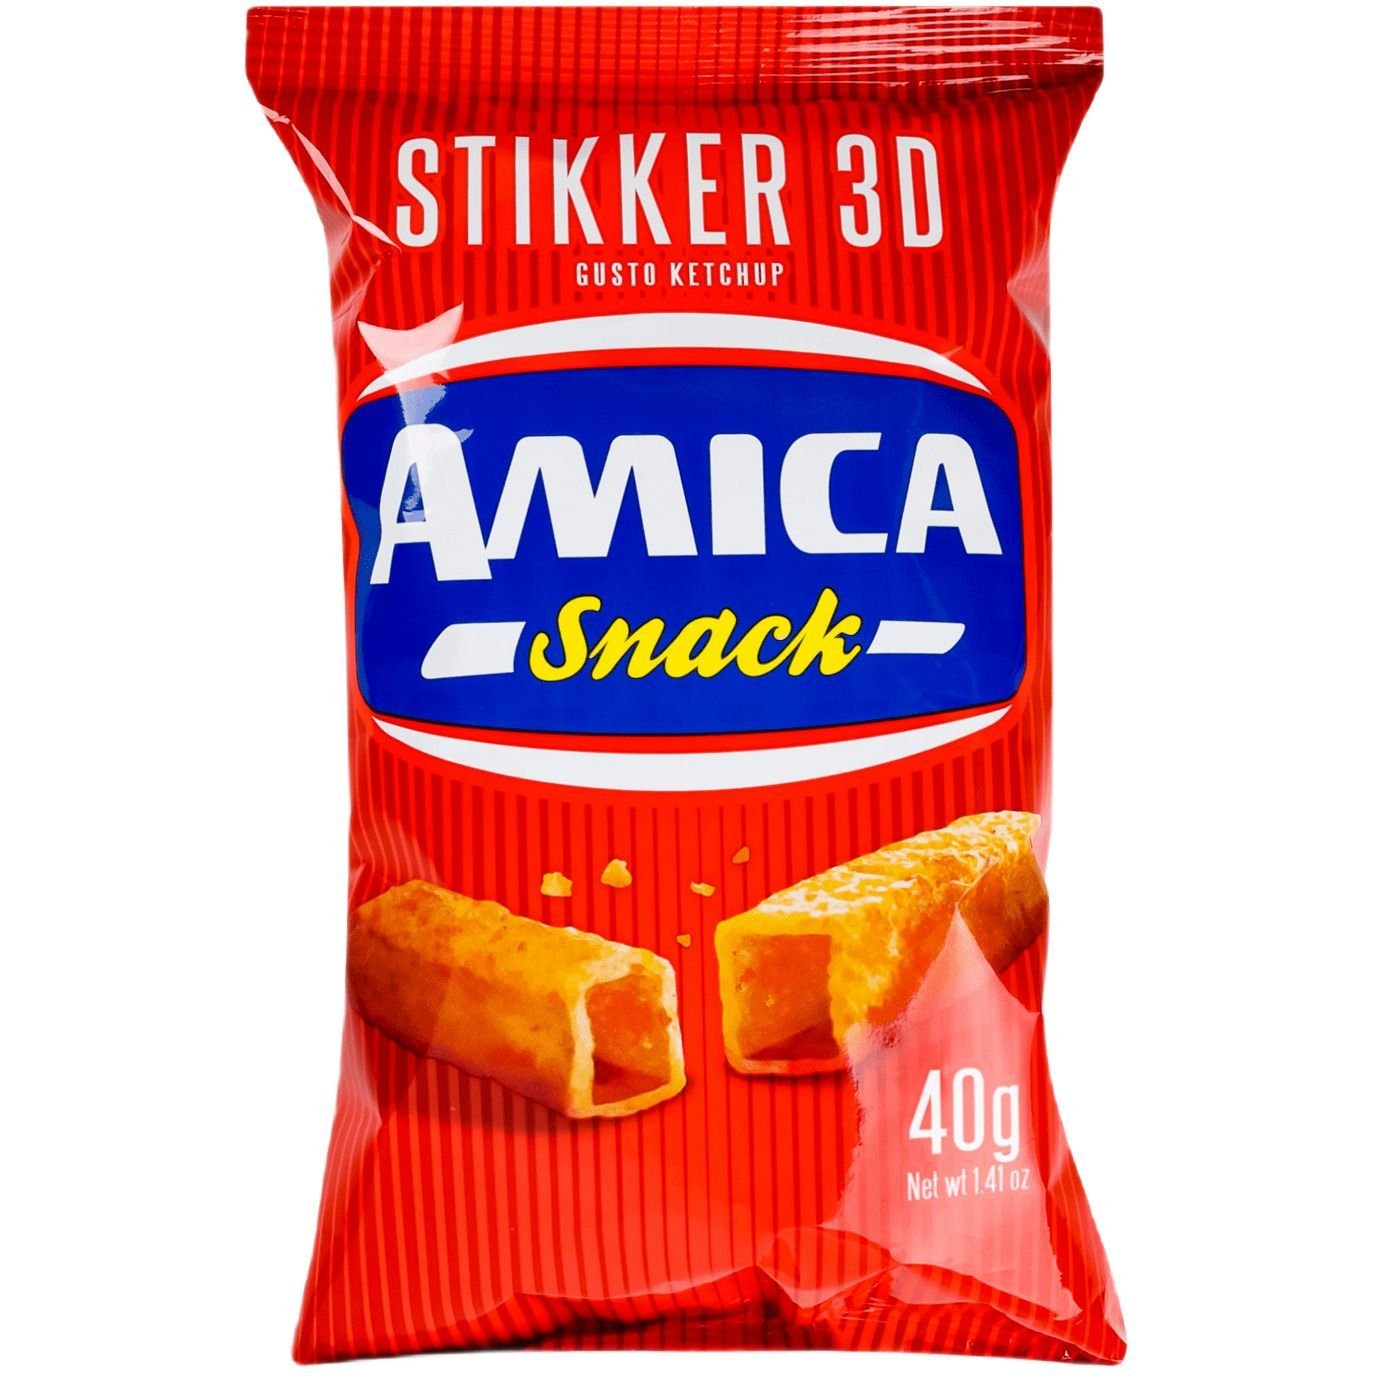 Снеки Amica картофельные со вкусом кетчупа 40 г (918449) - фото 1